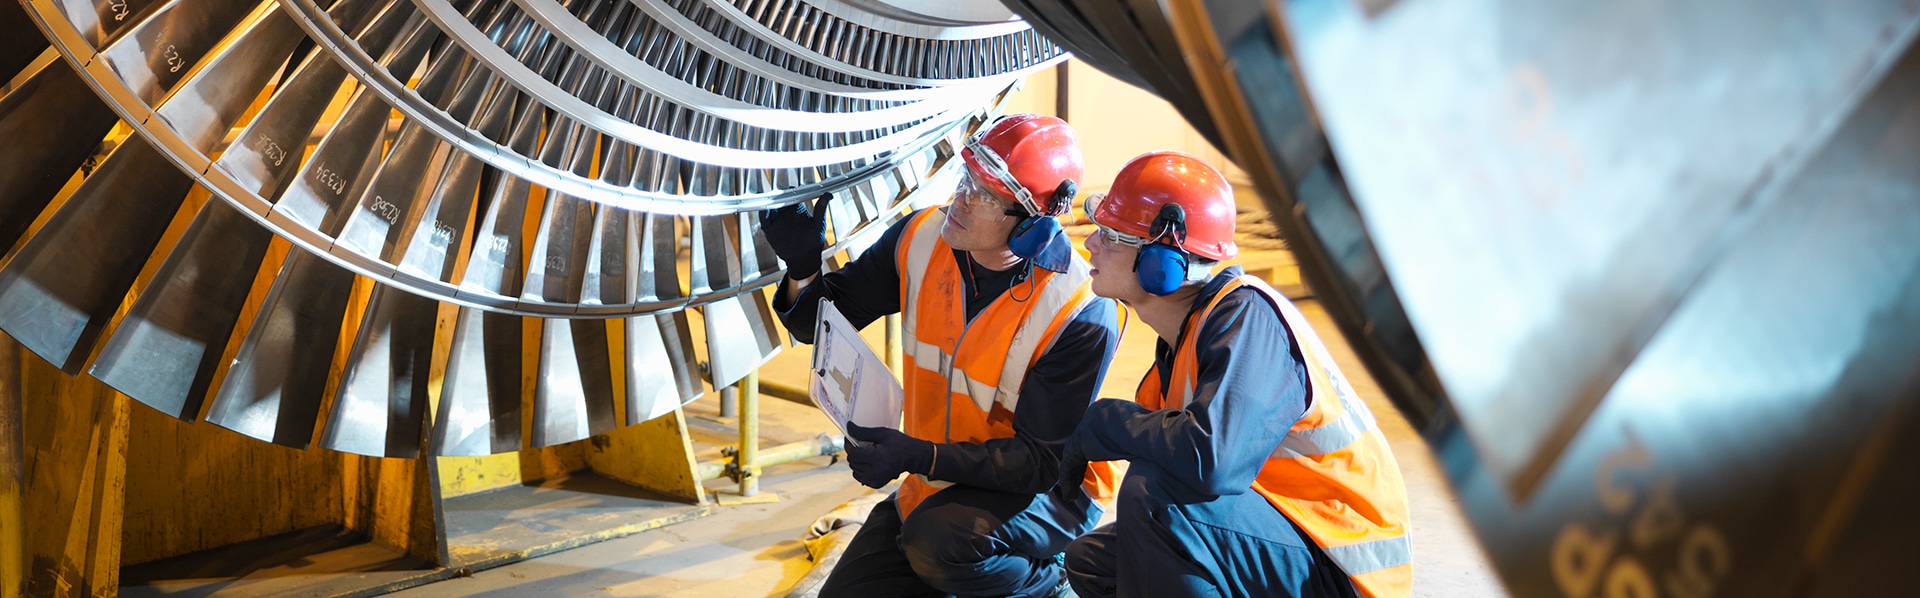 Siemens und SAP treiben gemeinsam die industrielle Transformation voran